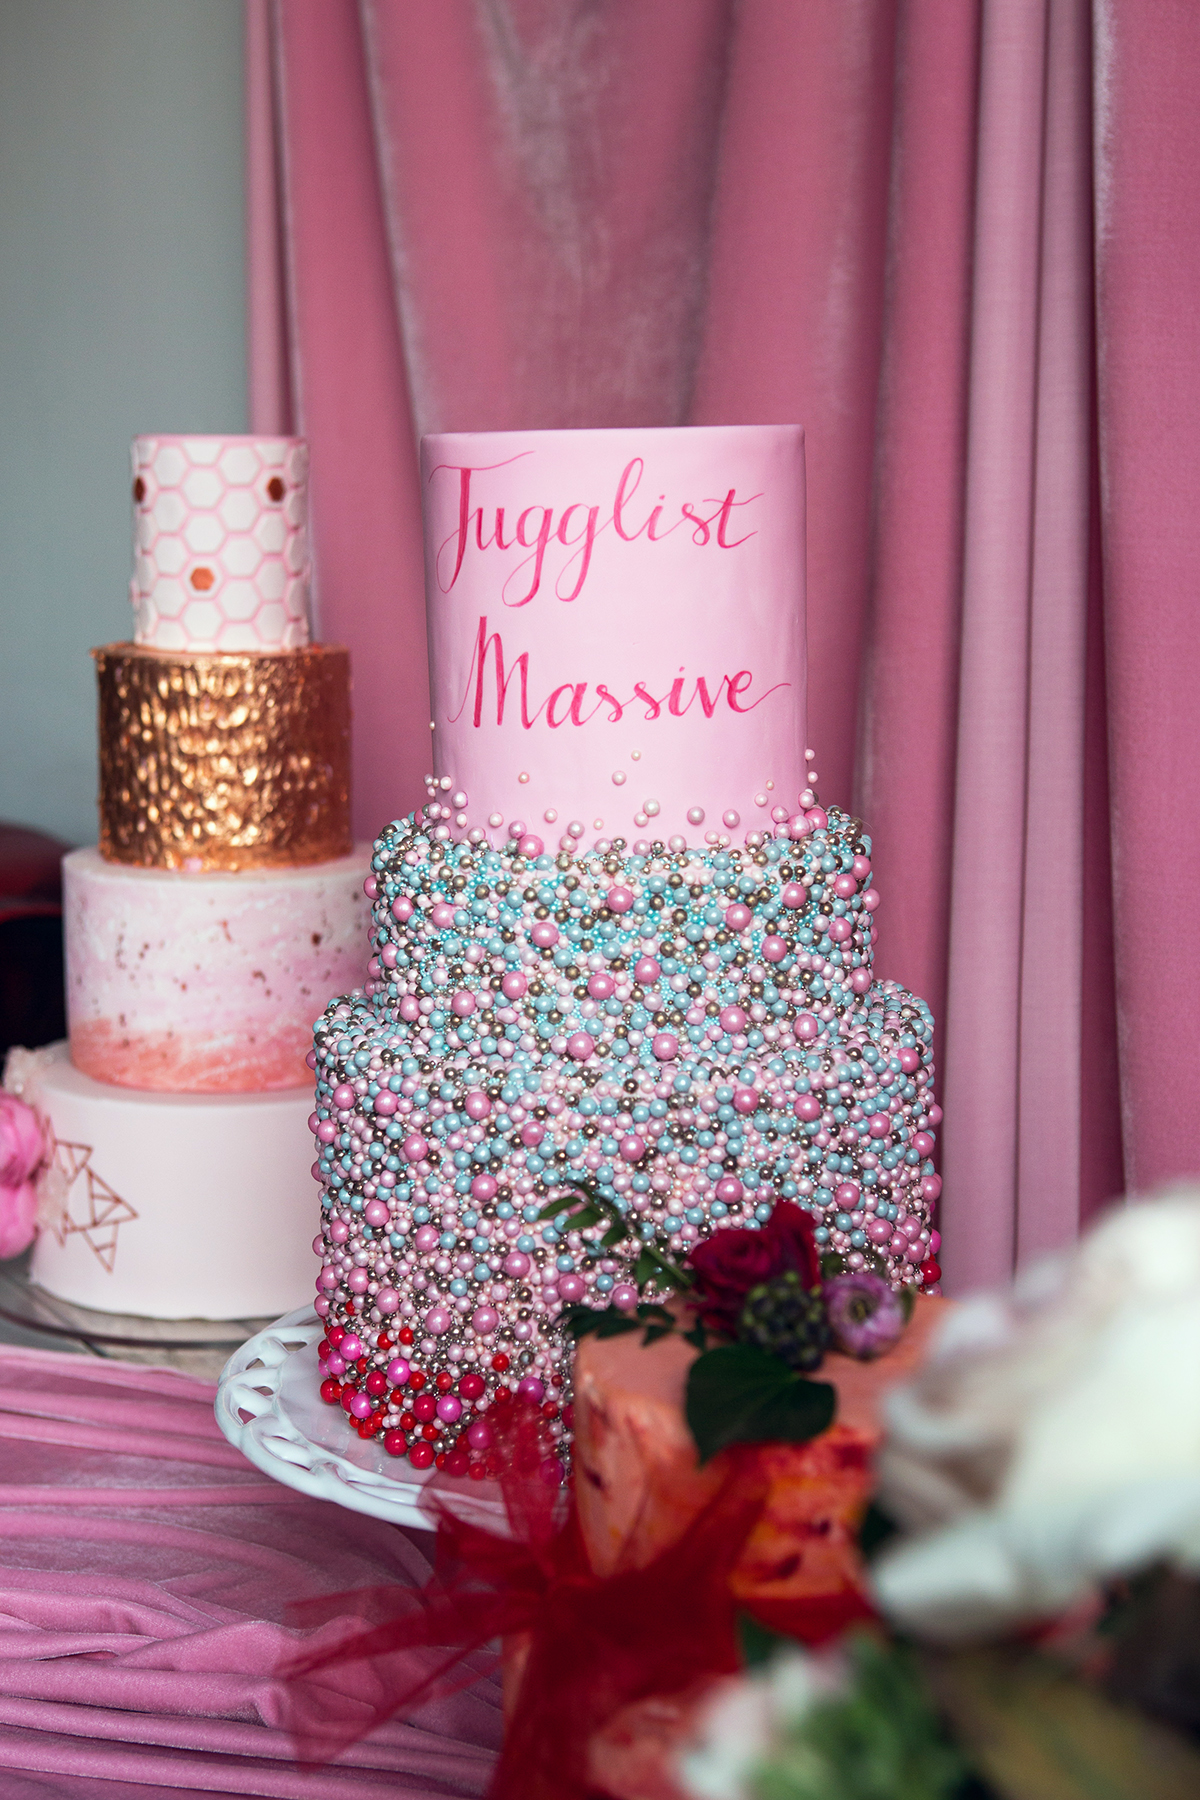 jugglist massive wedding cake